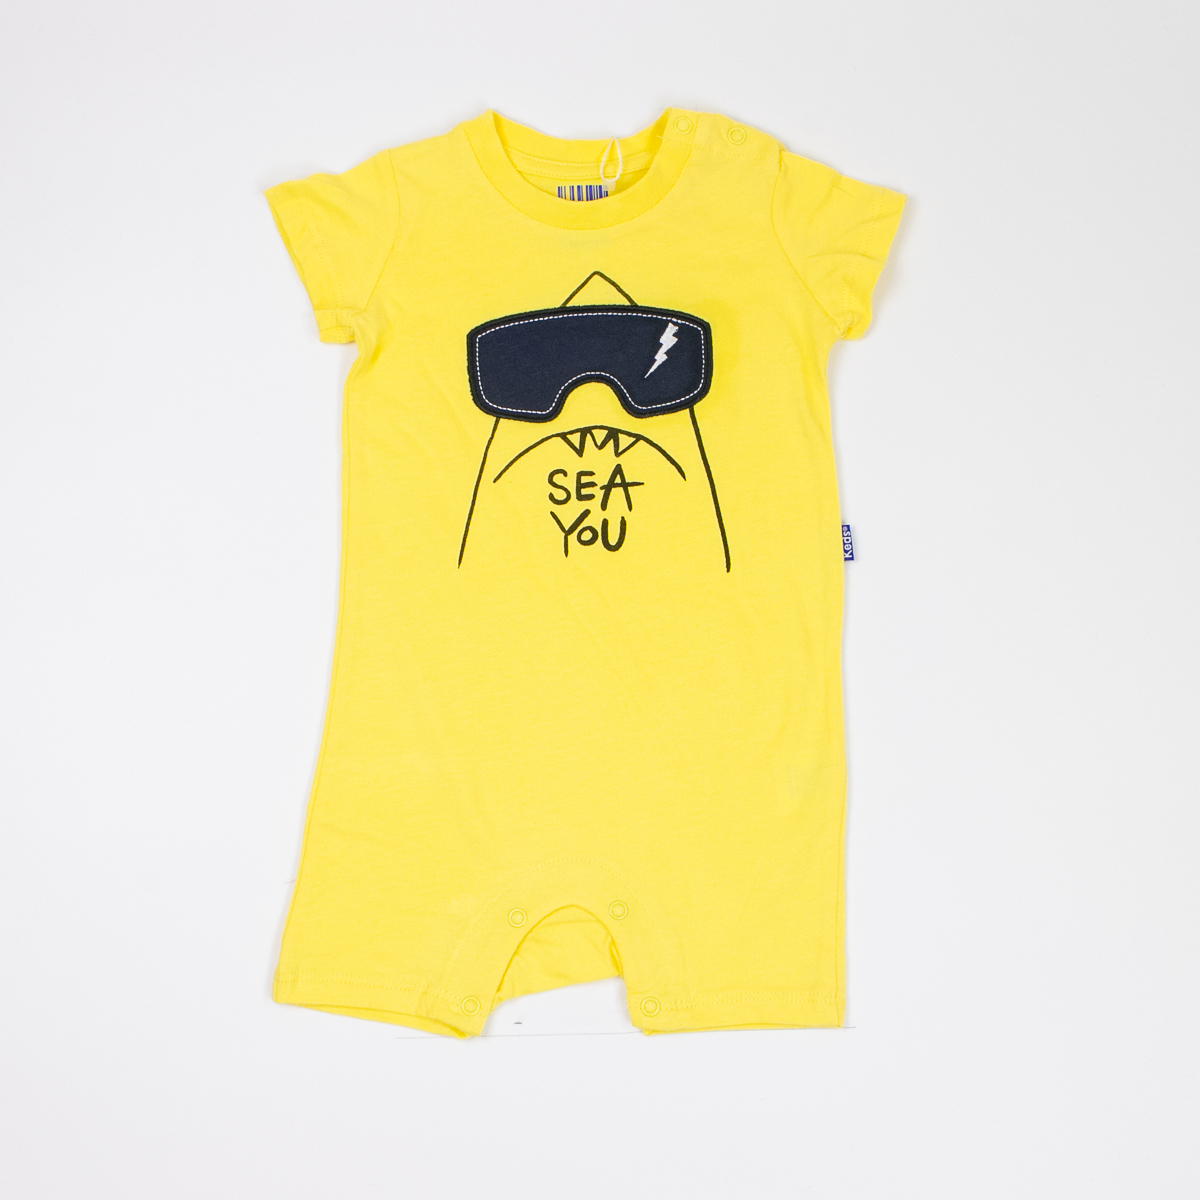 אוברול   שרוול קצר לתינוקות בנים בצבעים צהוב ו שחור בהיר